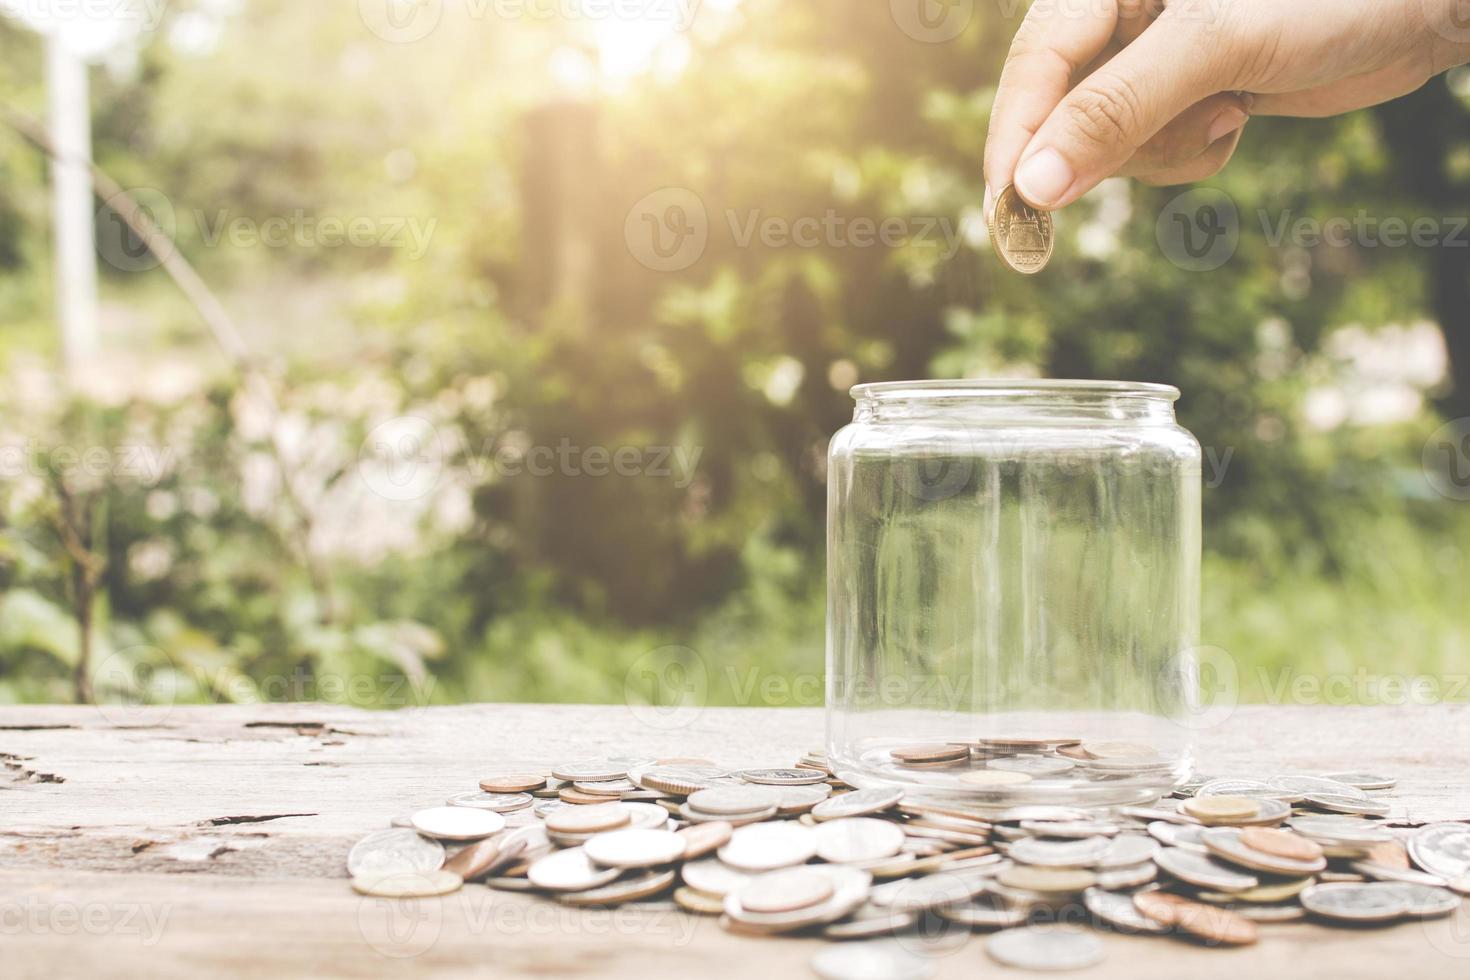 mão colocando dinheiro em pote de vidro foto